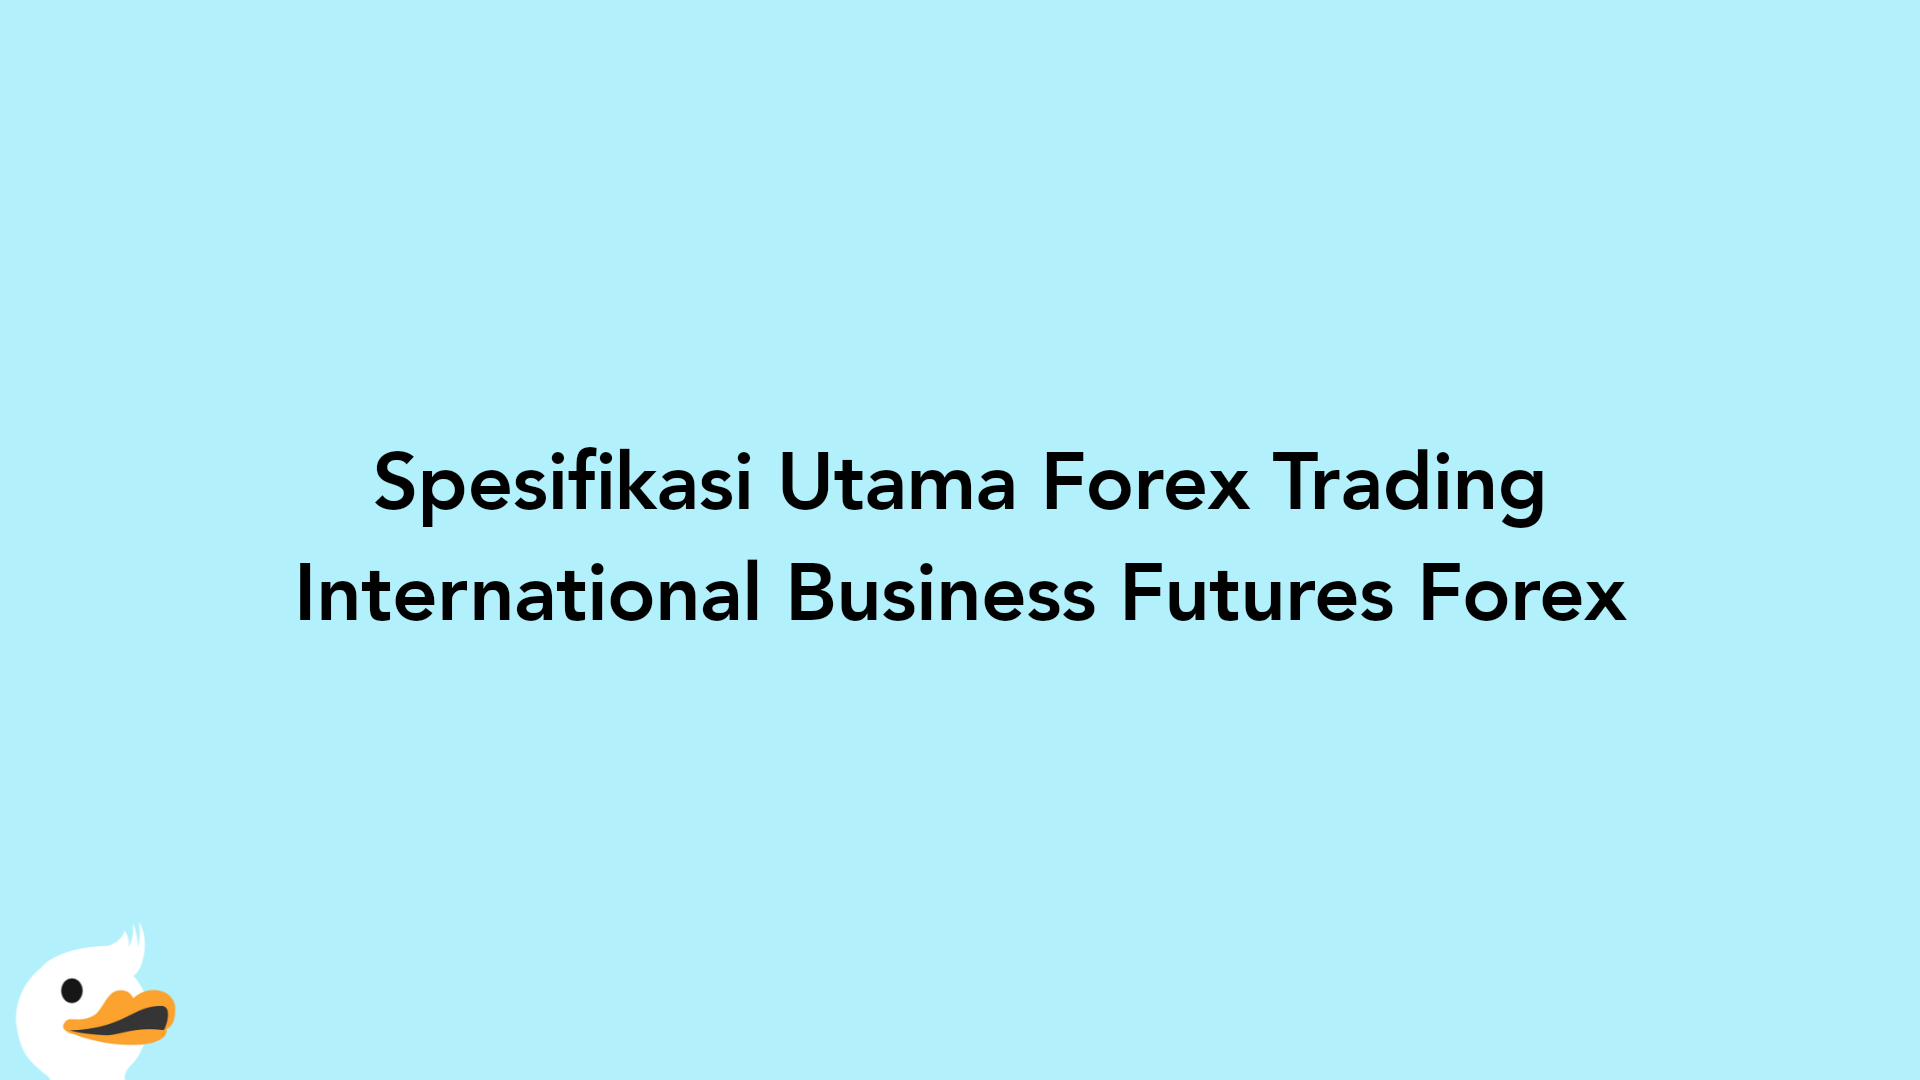 Spesifikasi Utama Forex Trading International Business Futures Forex